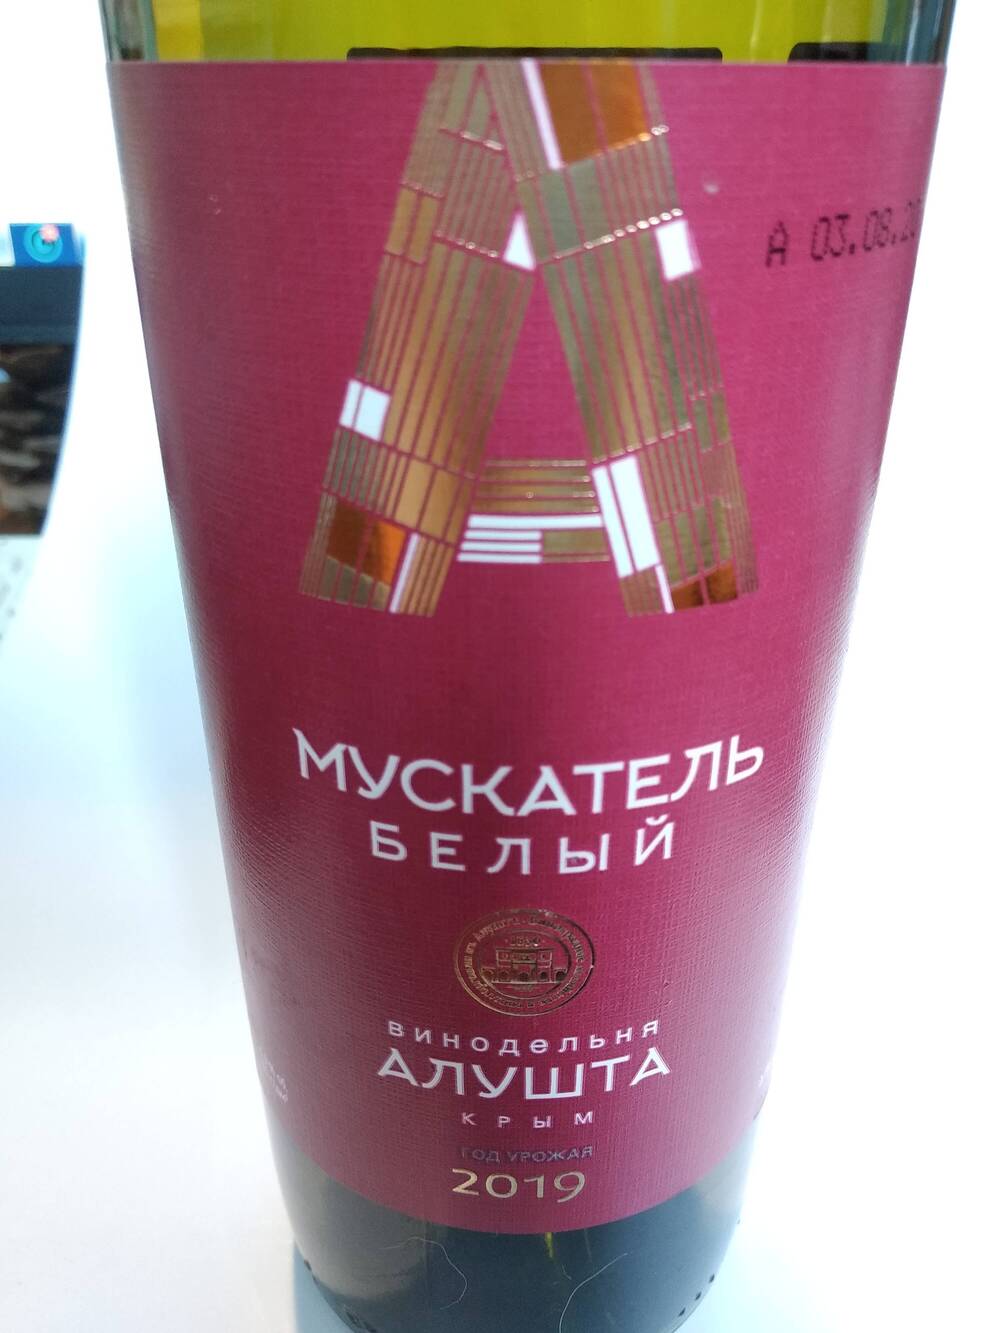 Бутылка винная. Креплёное (ликёрное) вино «Мускатель белый» с защищённым географическим указанием «Крым» ординарное десертное белое.